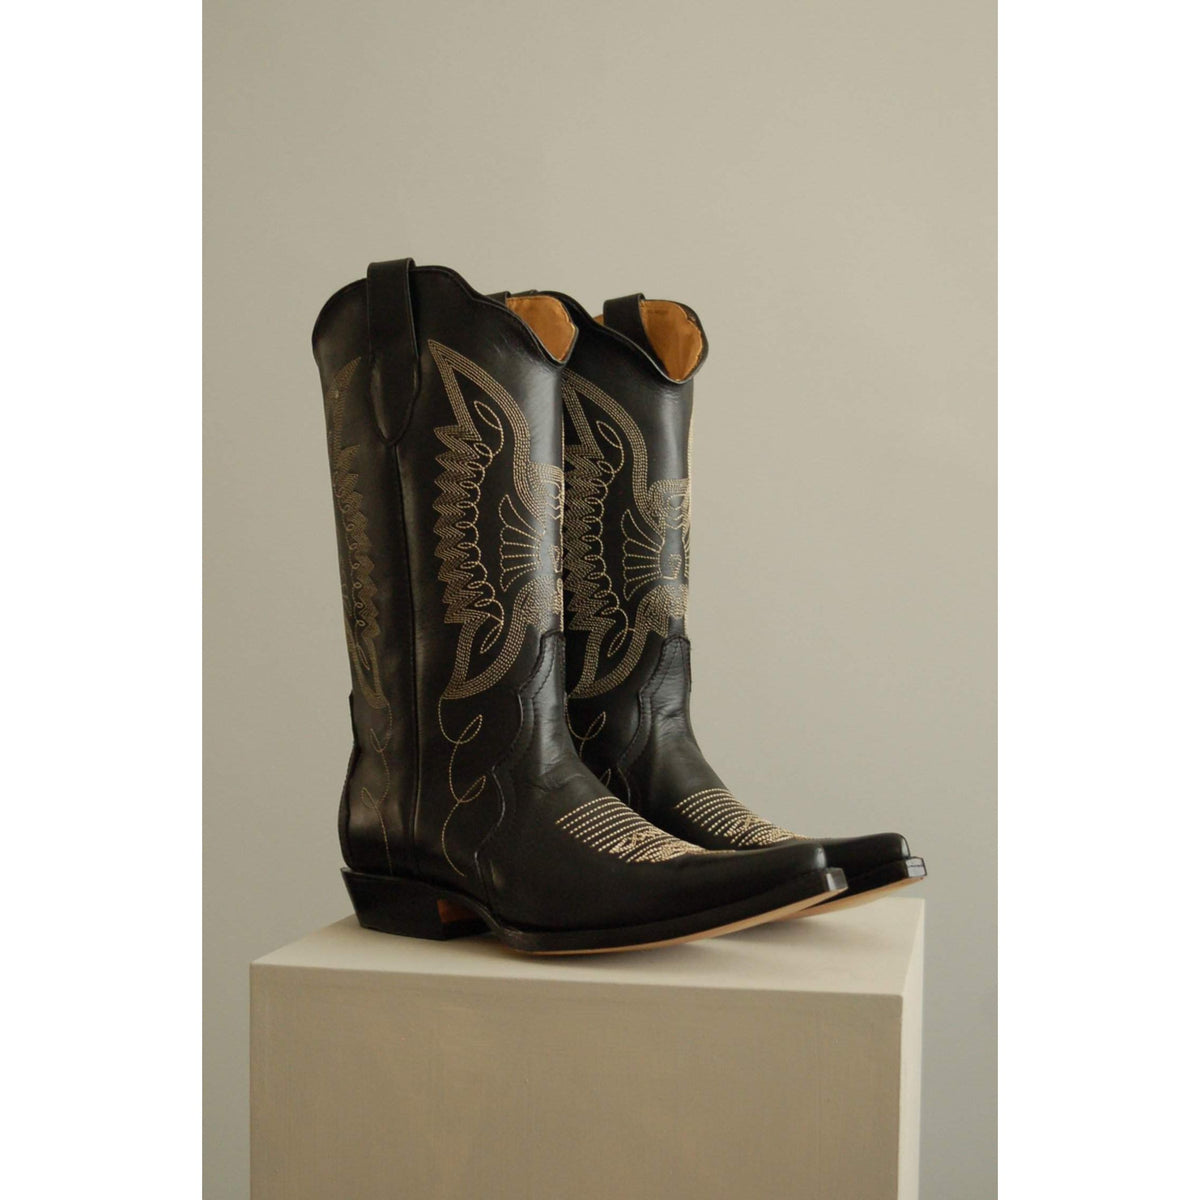 Botas Jornada negras / Jornada Black Botas-Montserrat Messeguer-Botas,Designers,Montserrat Messeguer,Shoes